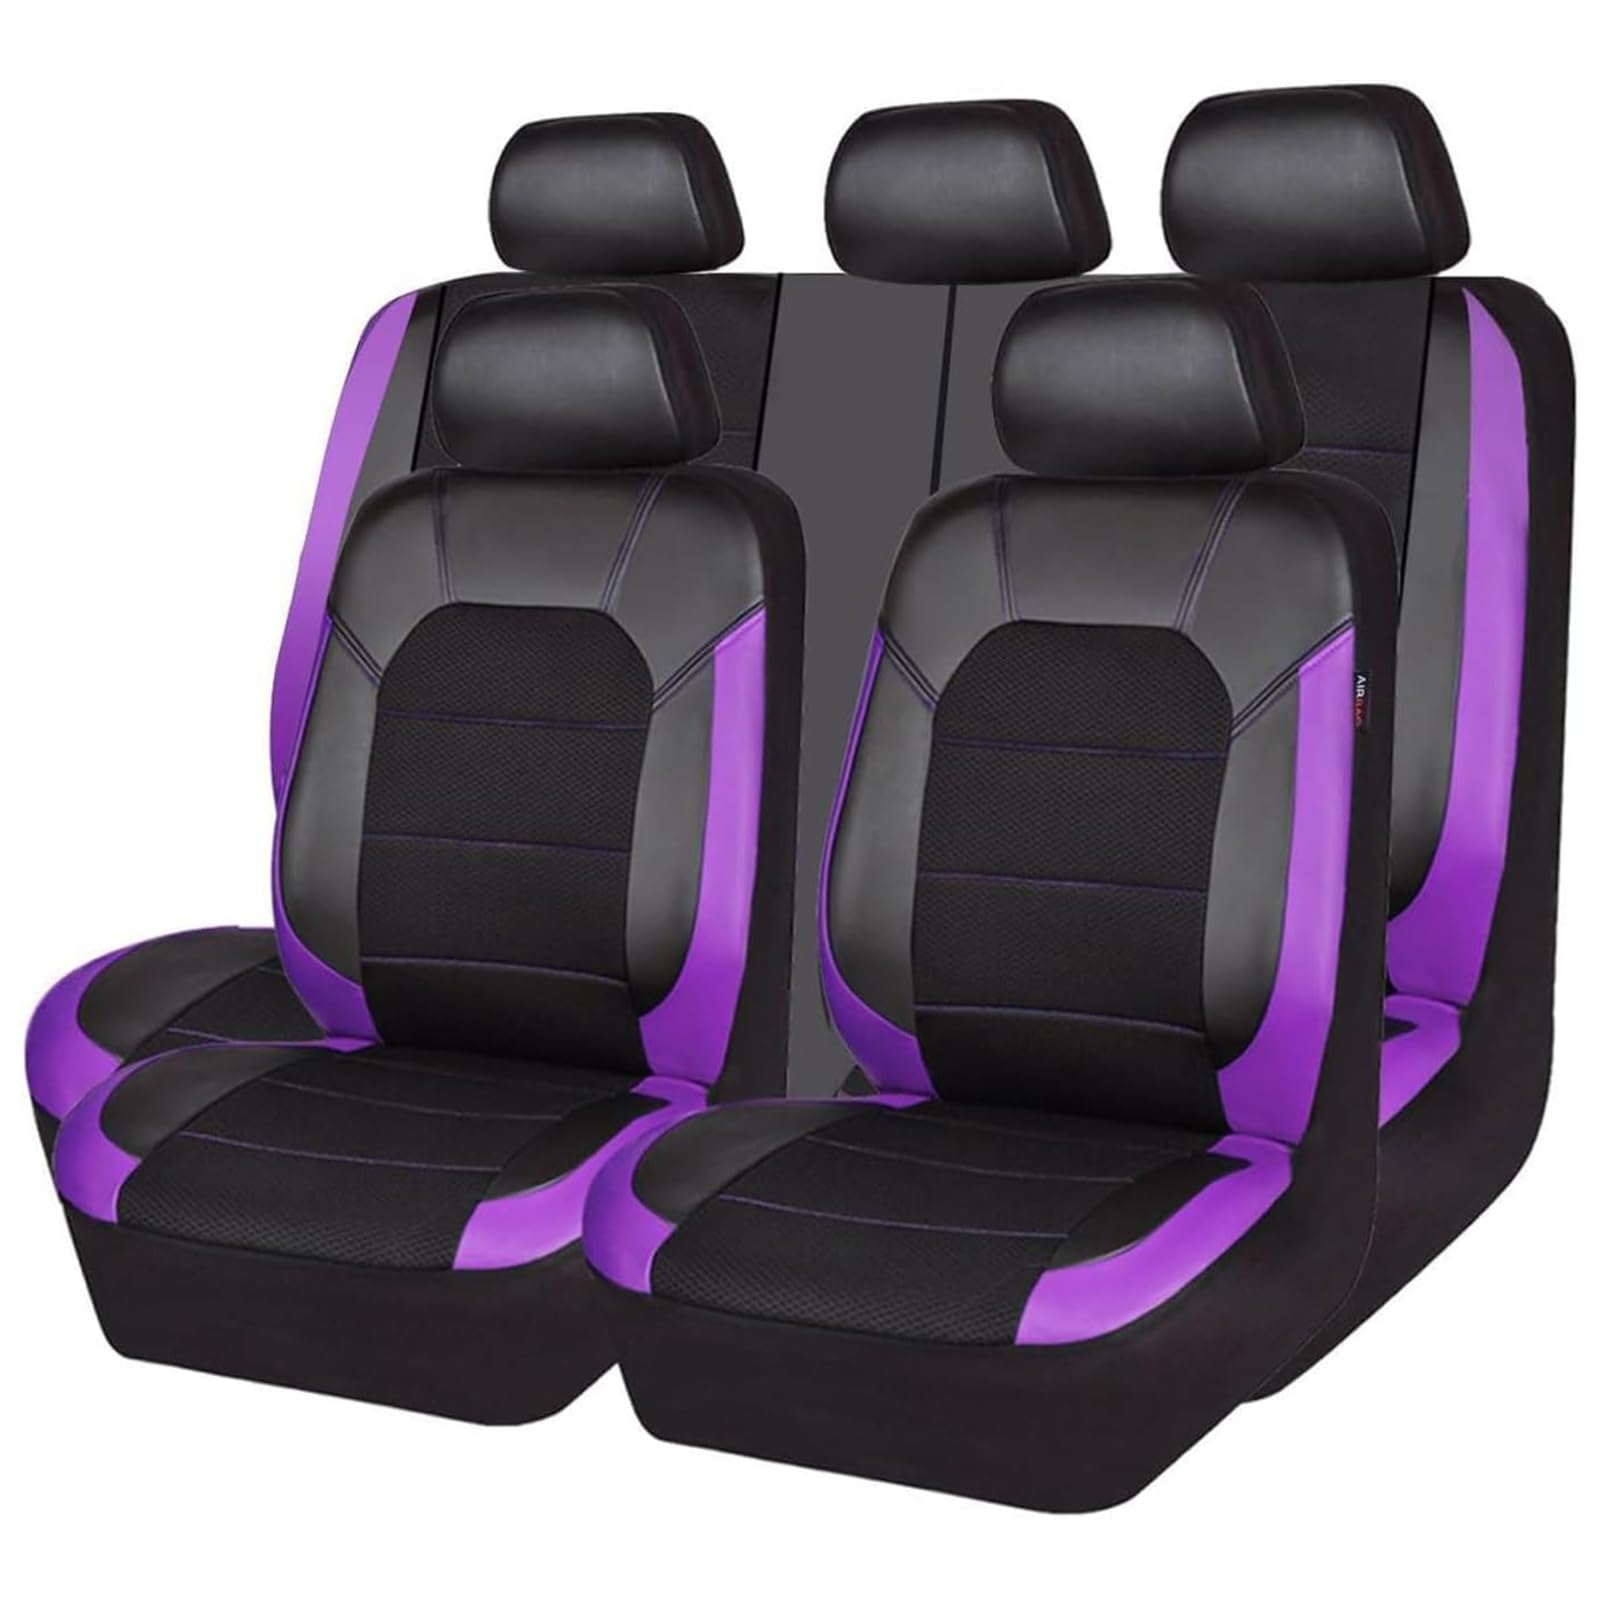 ZXAJDWNU Auto Leder Sitzbezüge Sets Für Nissan Micra K13 Hatchback 2010-2017, 5 Sitze Allwetter Vorne Und Hinten Komfortabler Atmungsaktiv Sitzbezüge Sitzschoner Innenraum Zubehör,E/Purple von ZXAJDWNU